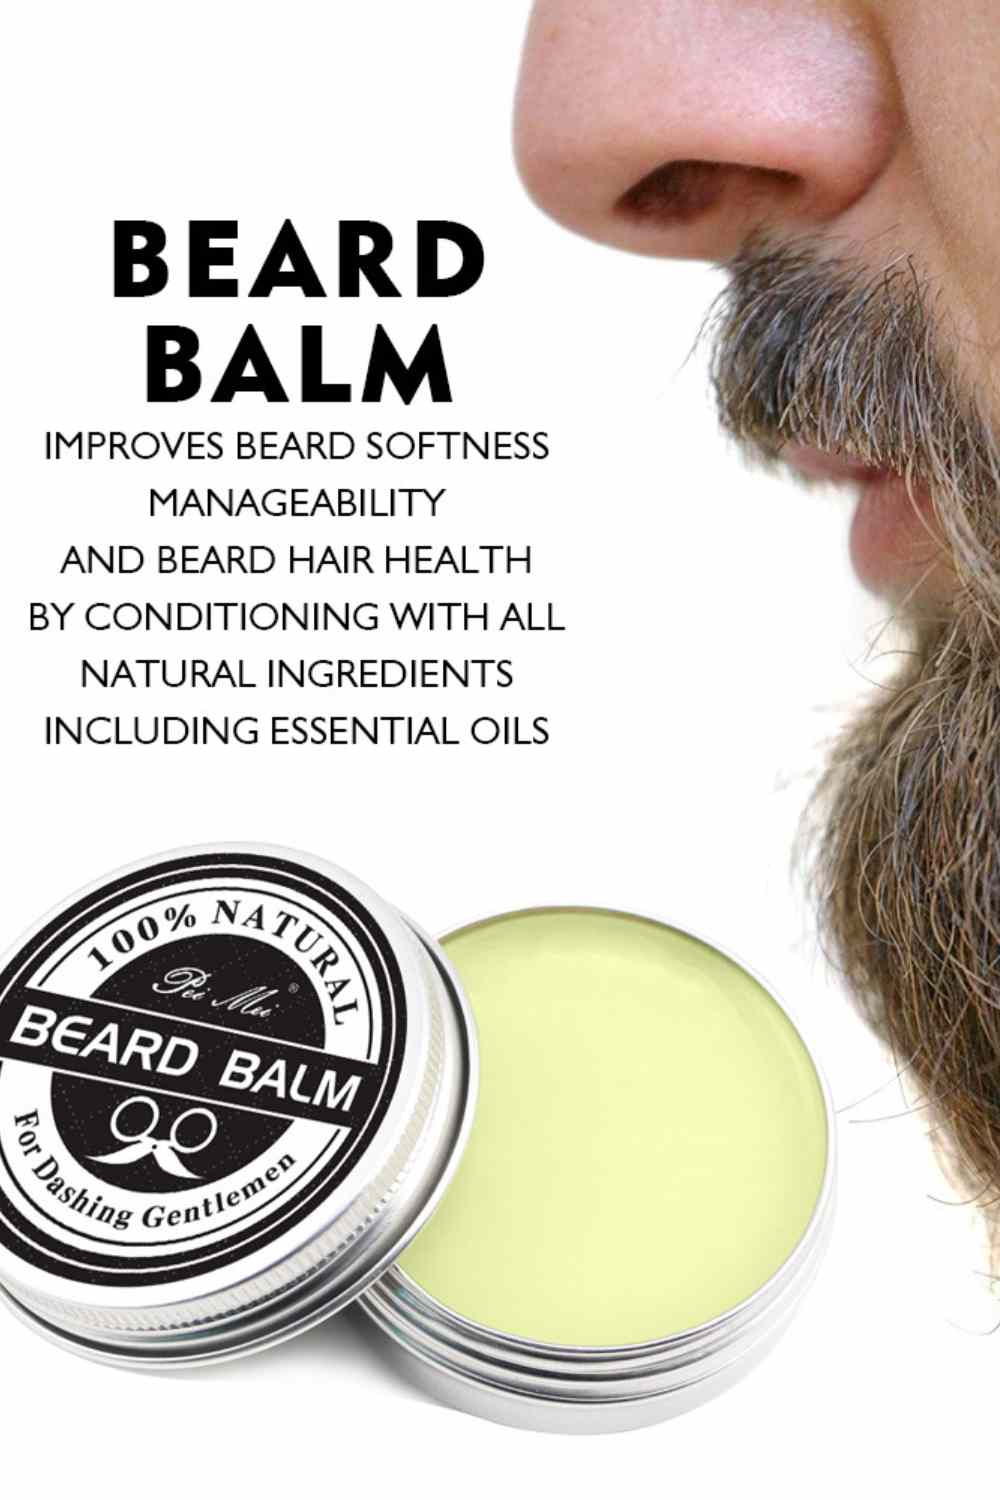 100% Natural Organic Beard Balm and Beard Oil - A.A.Y FASHION (1080 x 1080 px)